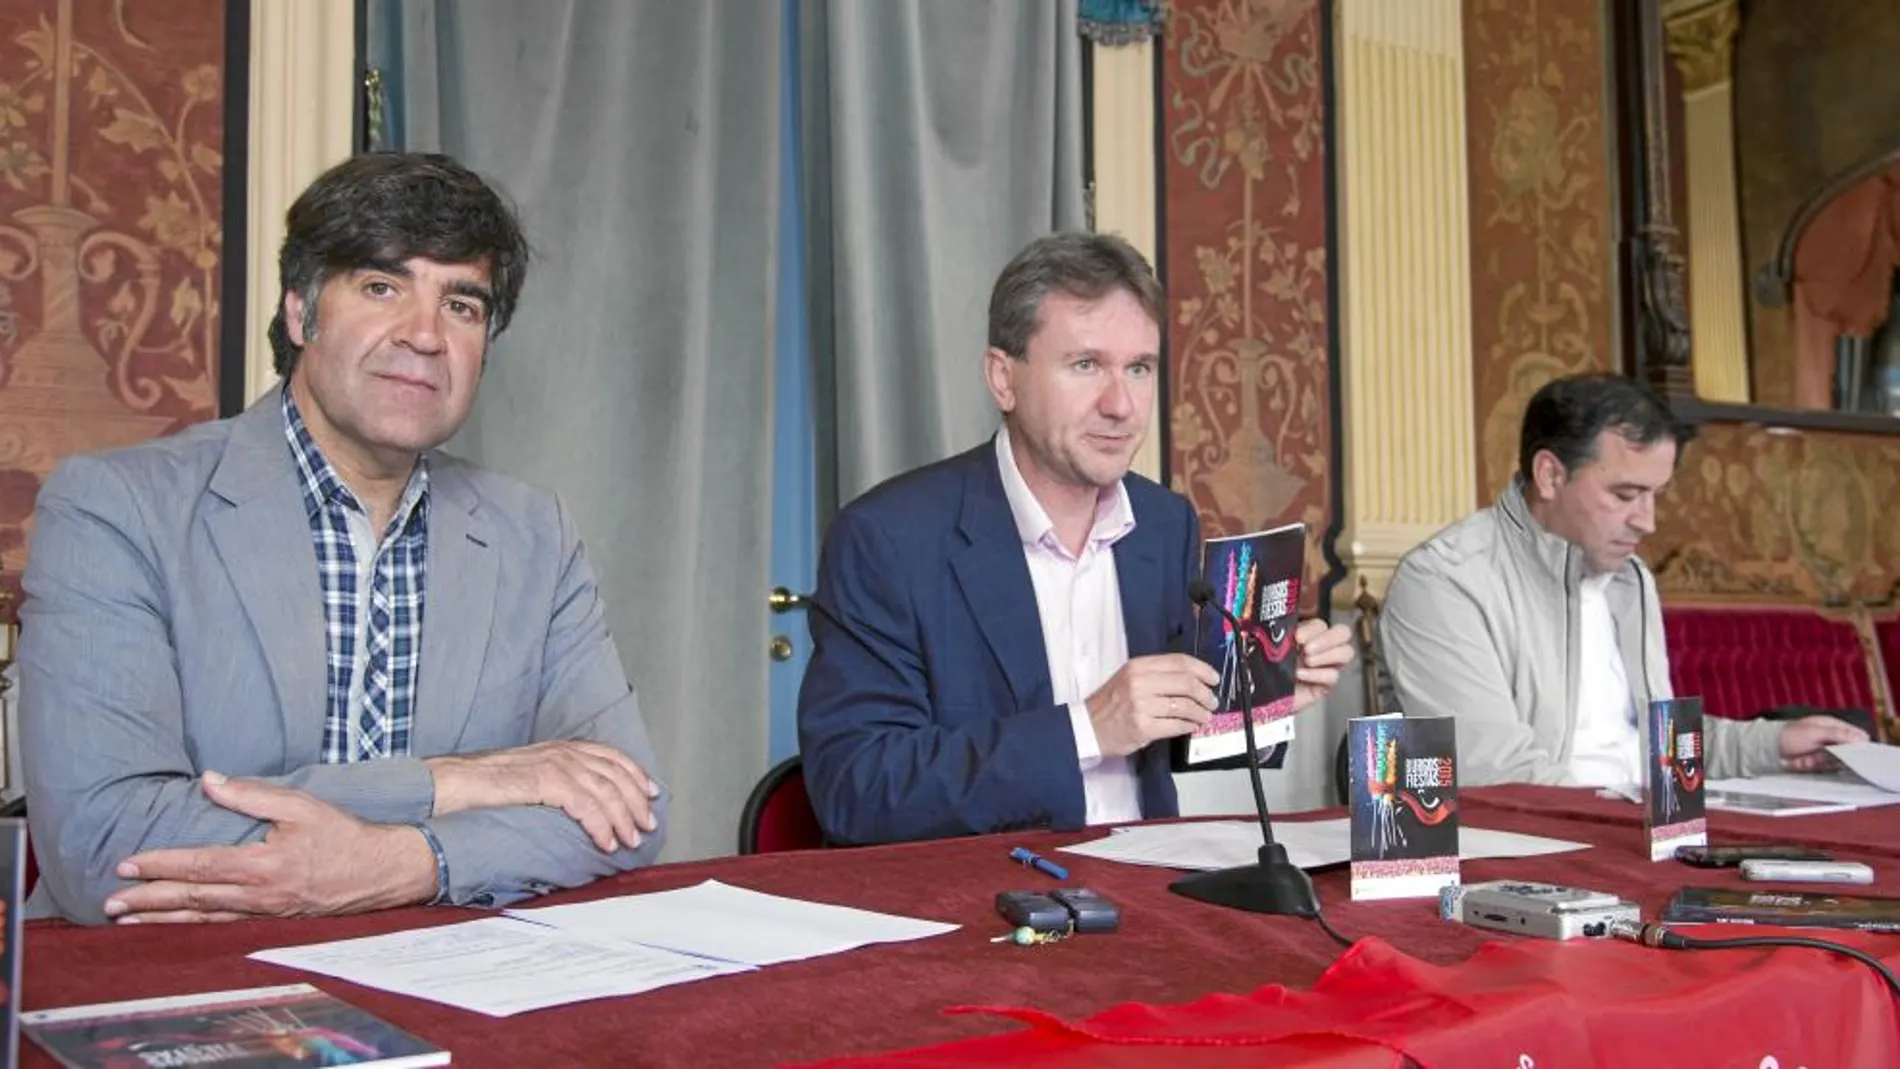 El alcalde de Burgos, Javier Lacalle, presenta el programa de Fiestas de San Pedro y San Pablo, junto al concejal Fernando Gómez y José Antonio Antón